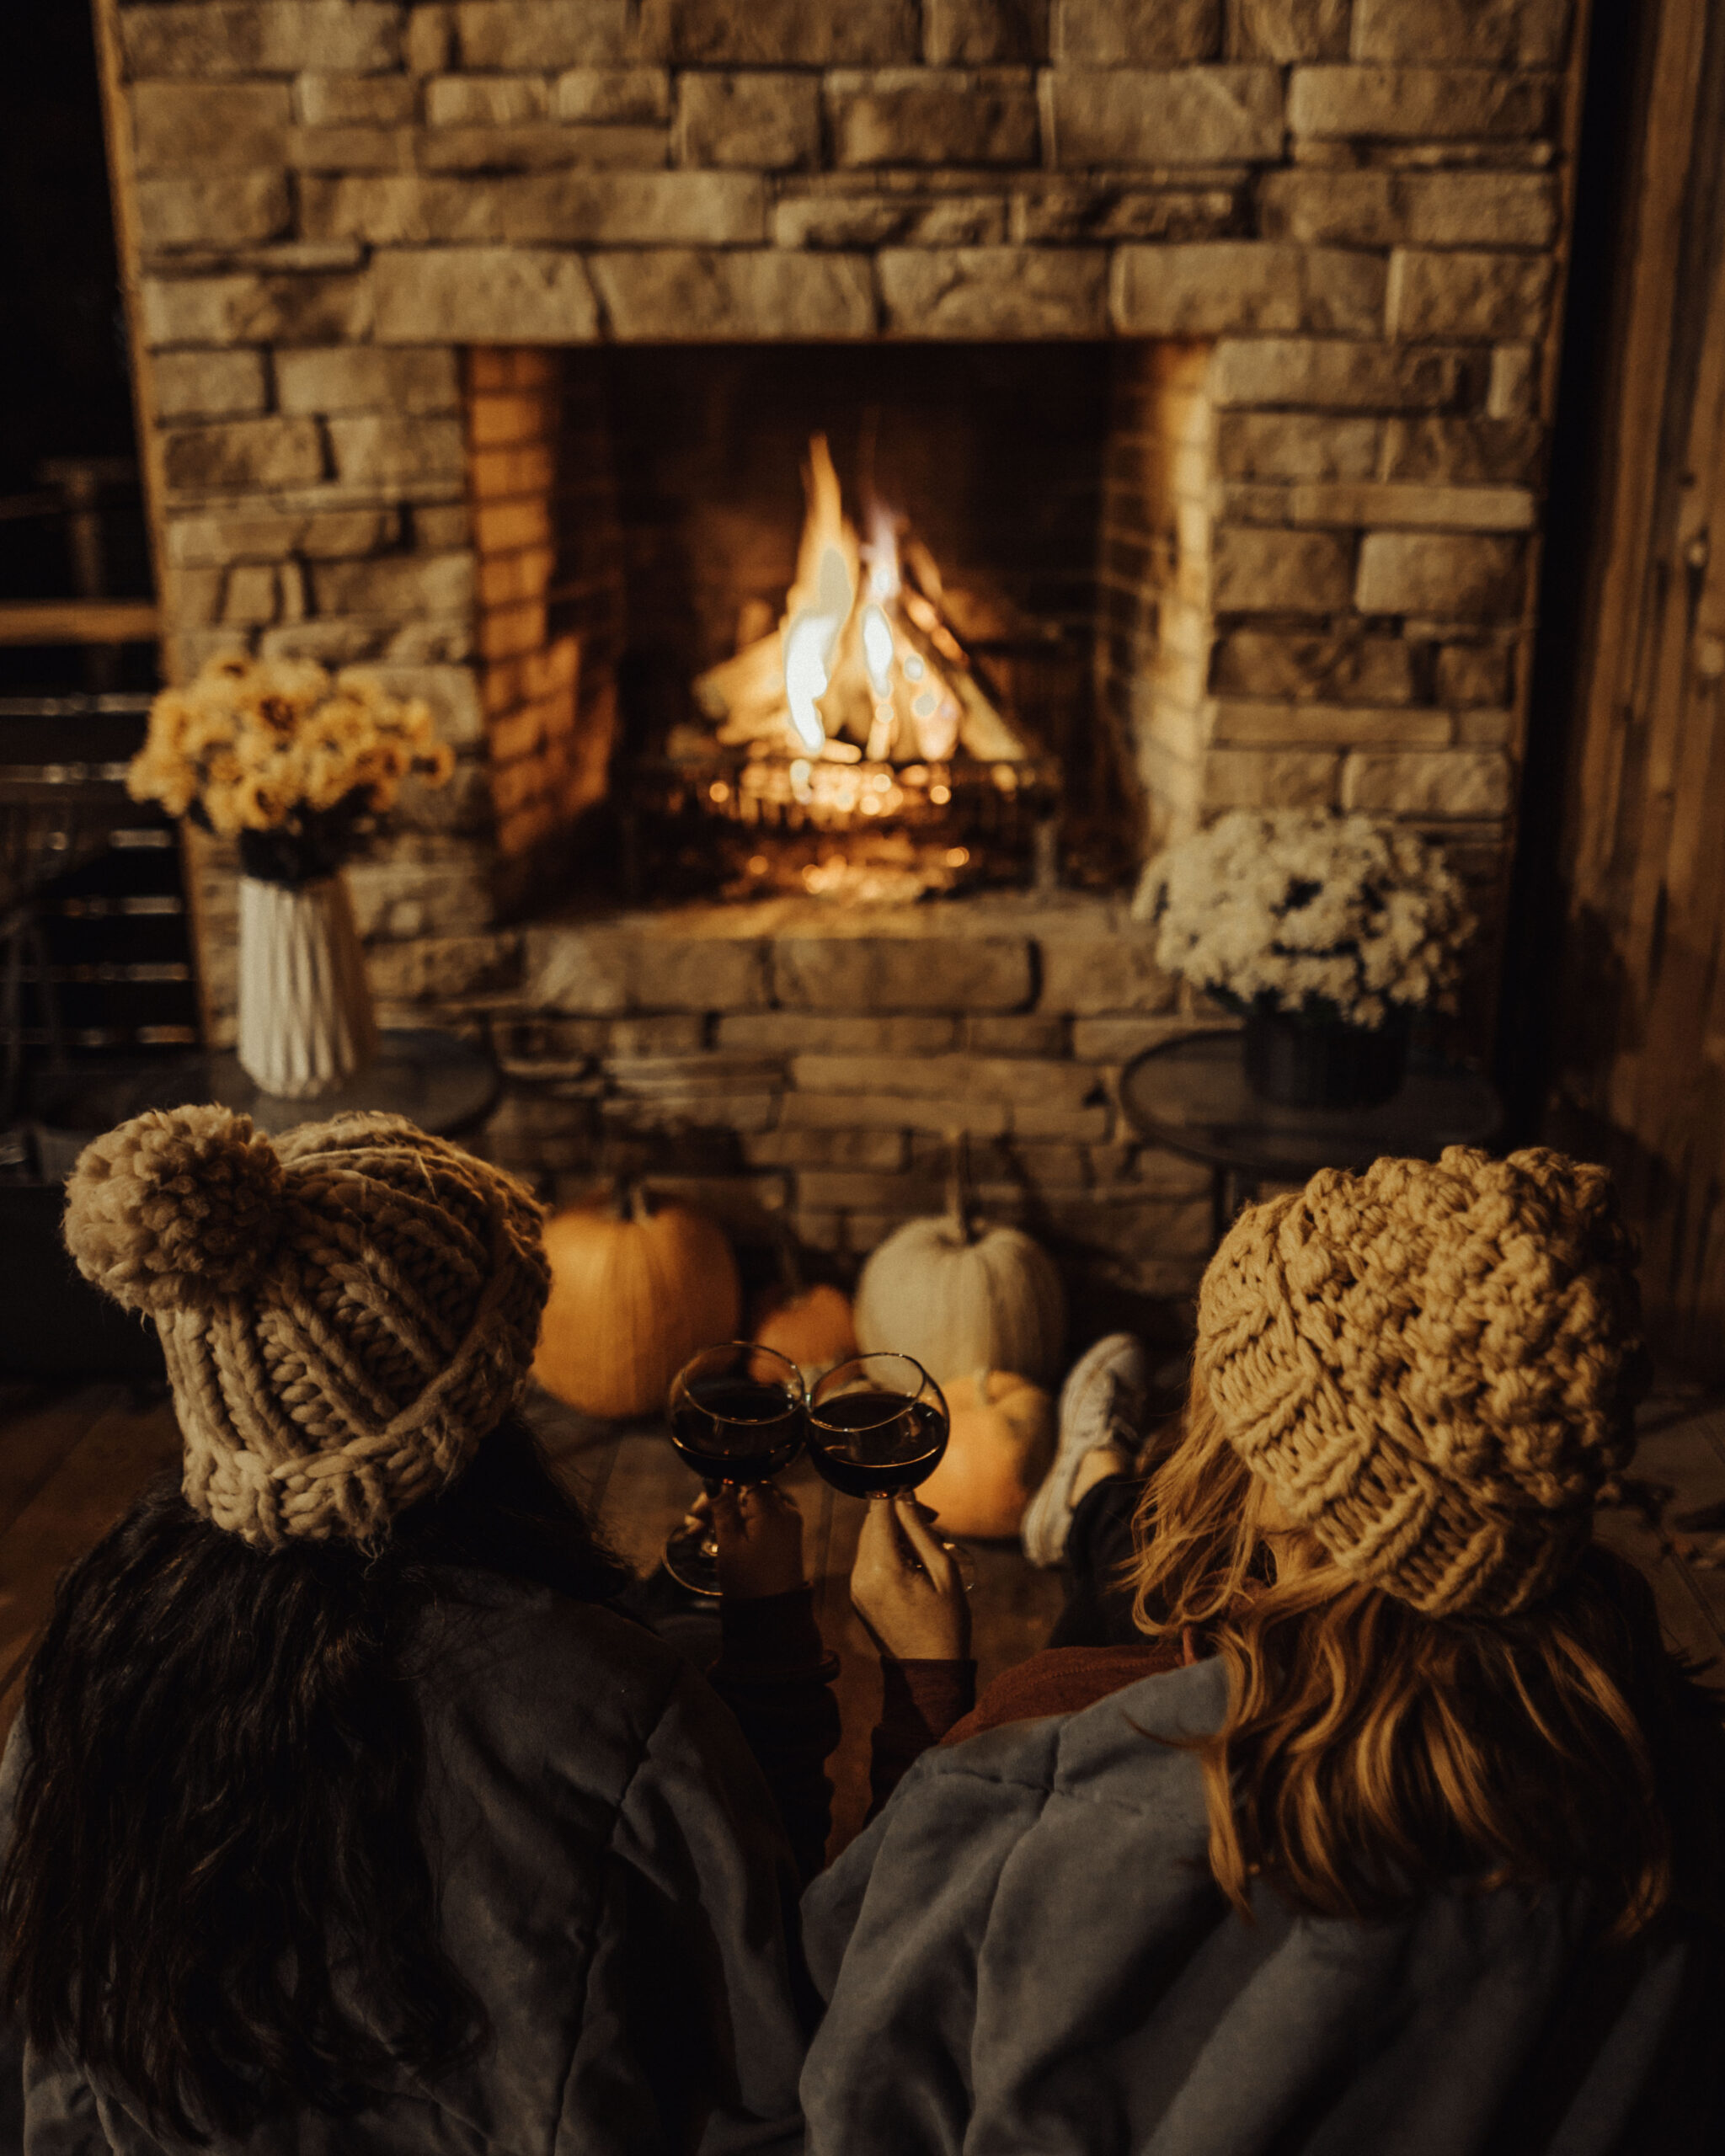 Fall fireplace